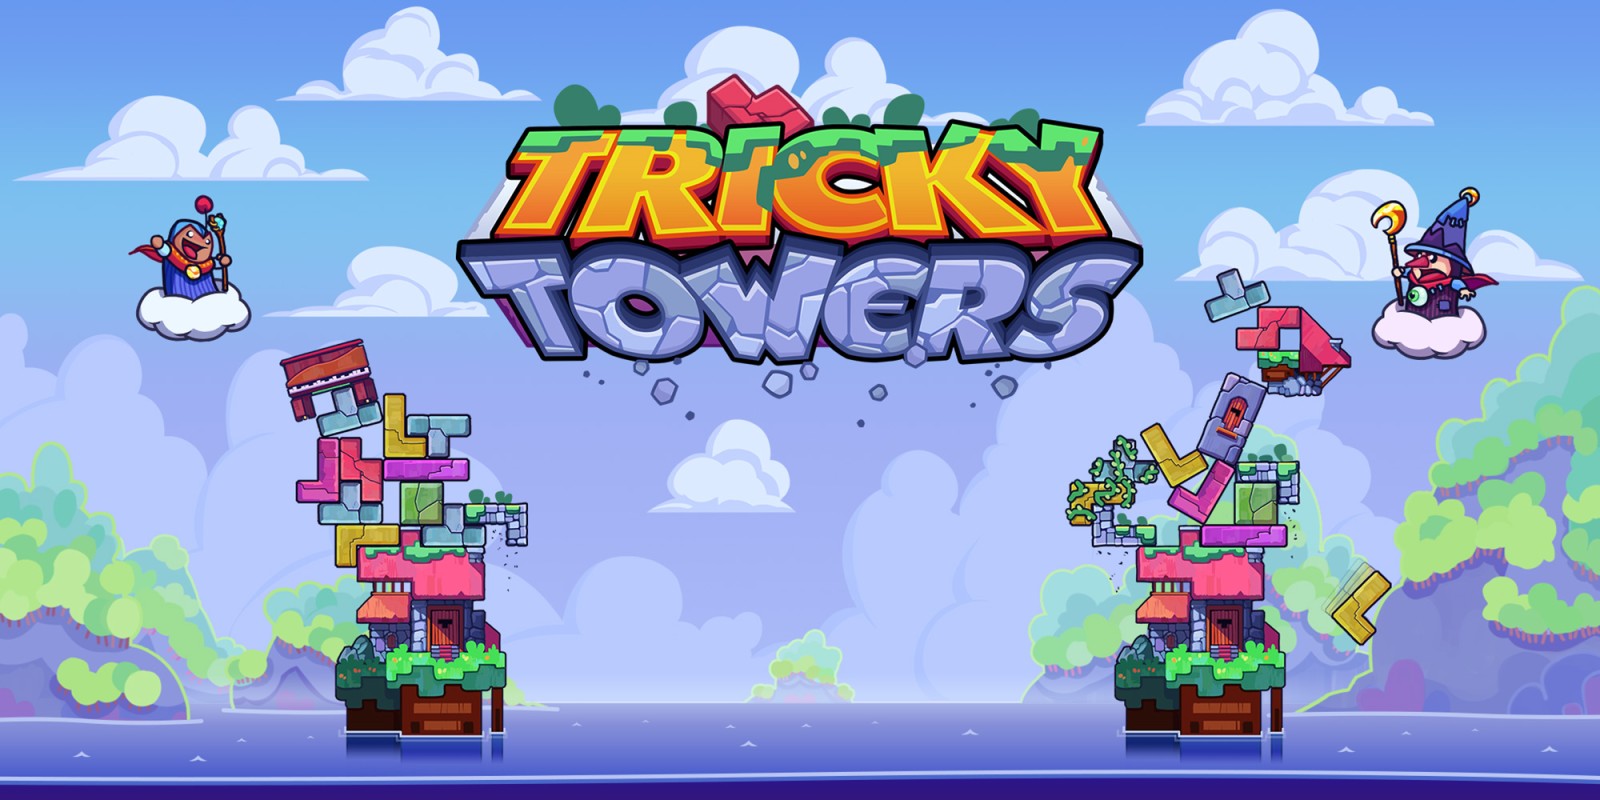 Tricky towers kostenlos spielen